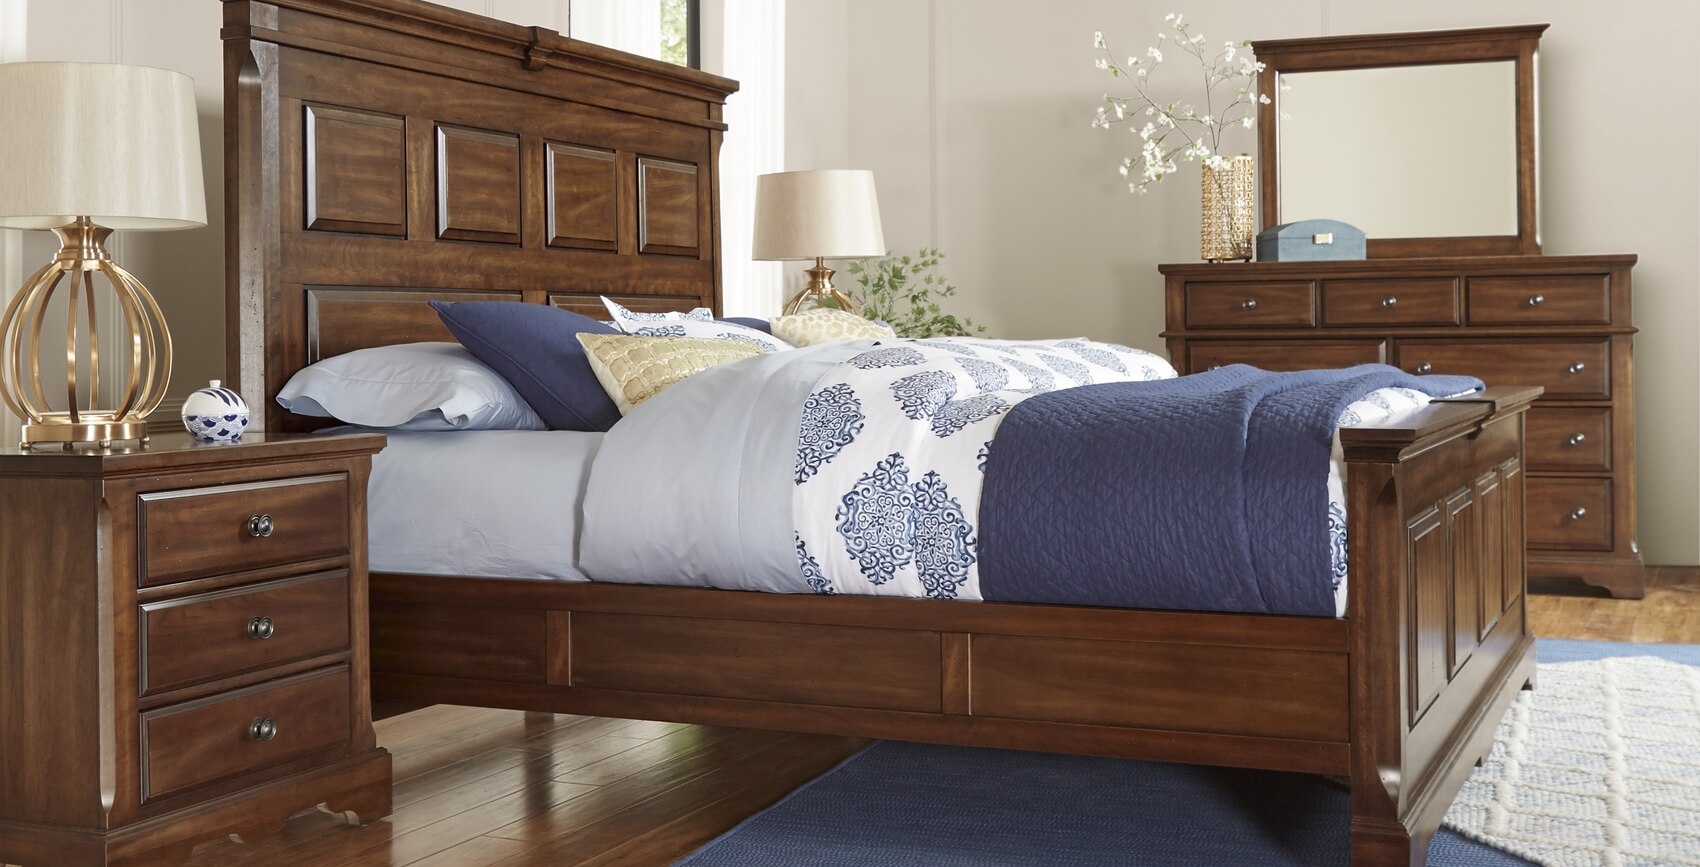 Mẫu giường ngủ đẹp bằng gỗ Xoan Đào nổi bật với màu sắc độc đáo